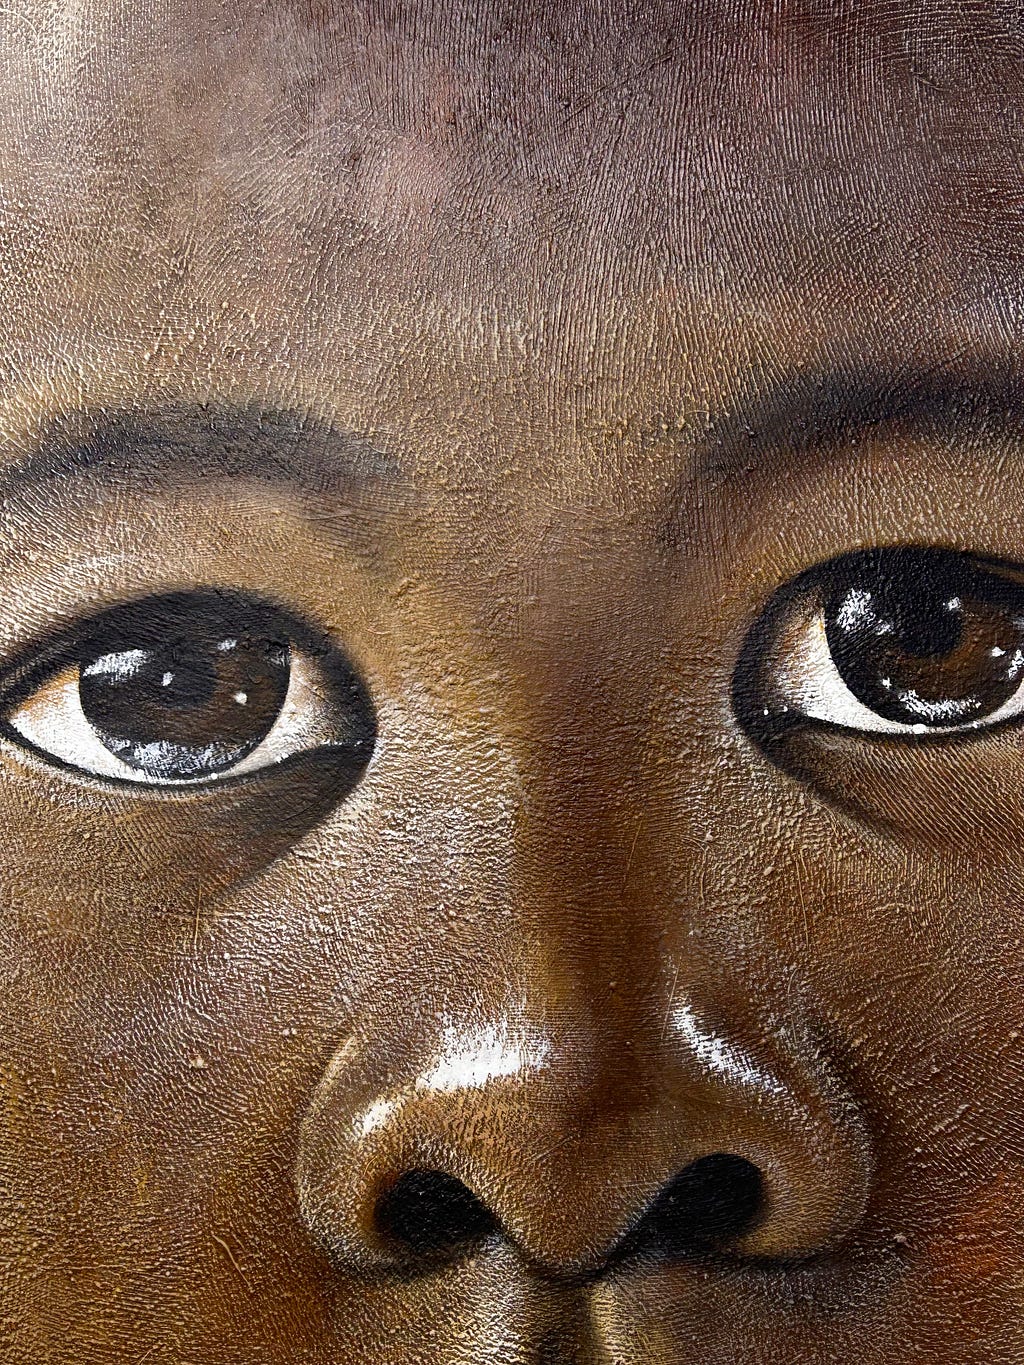 “Mthokozisi” by Velaphi Mzimba (2017), Acrylic on canvas